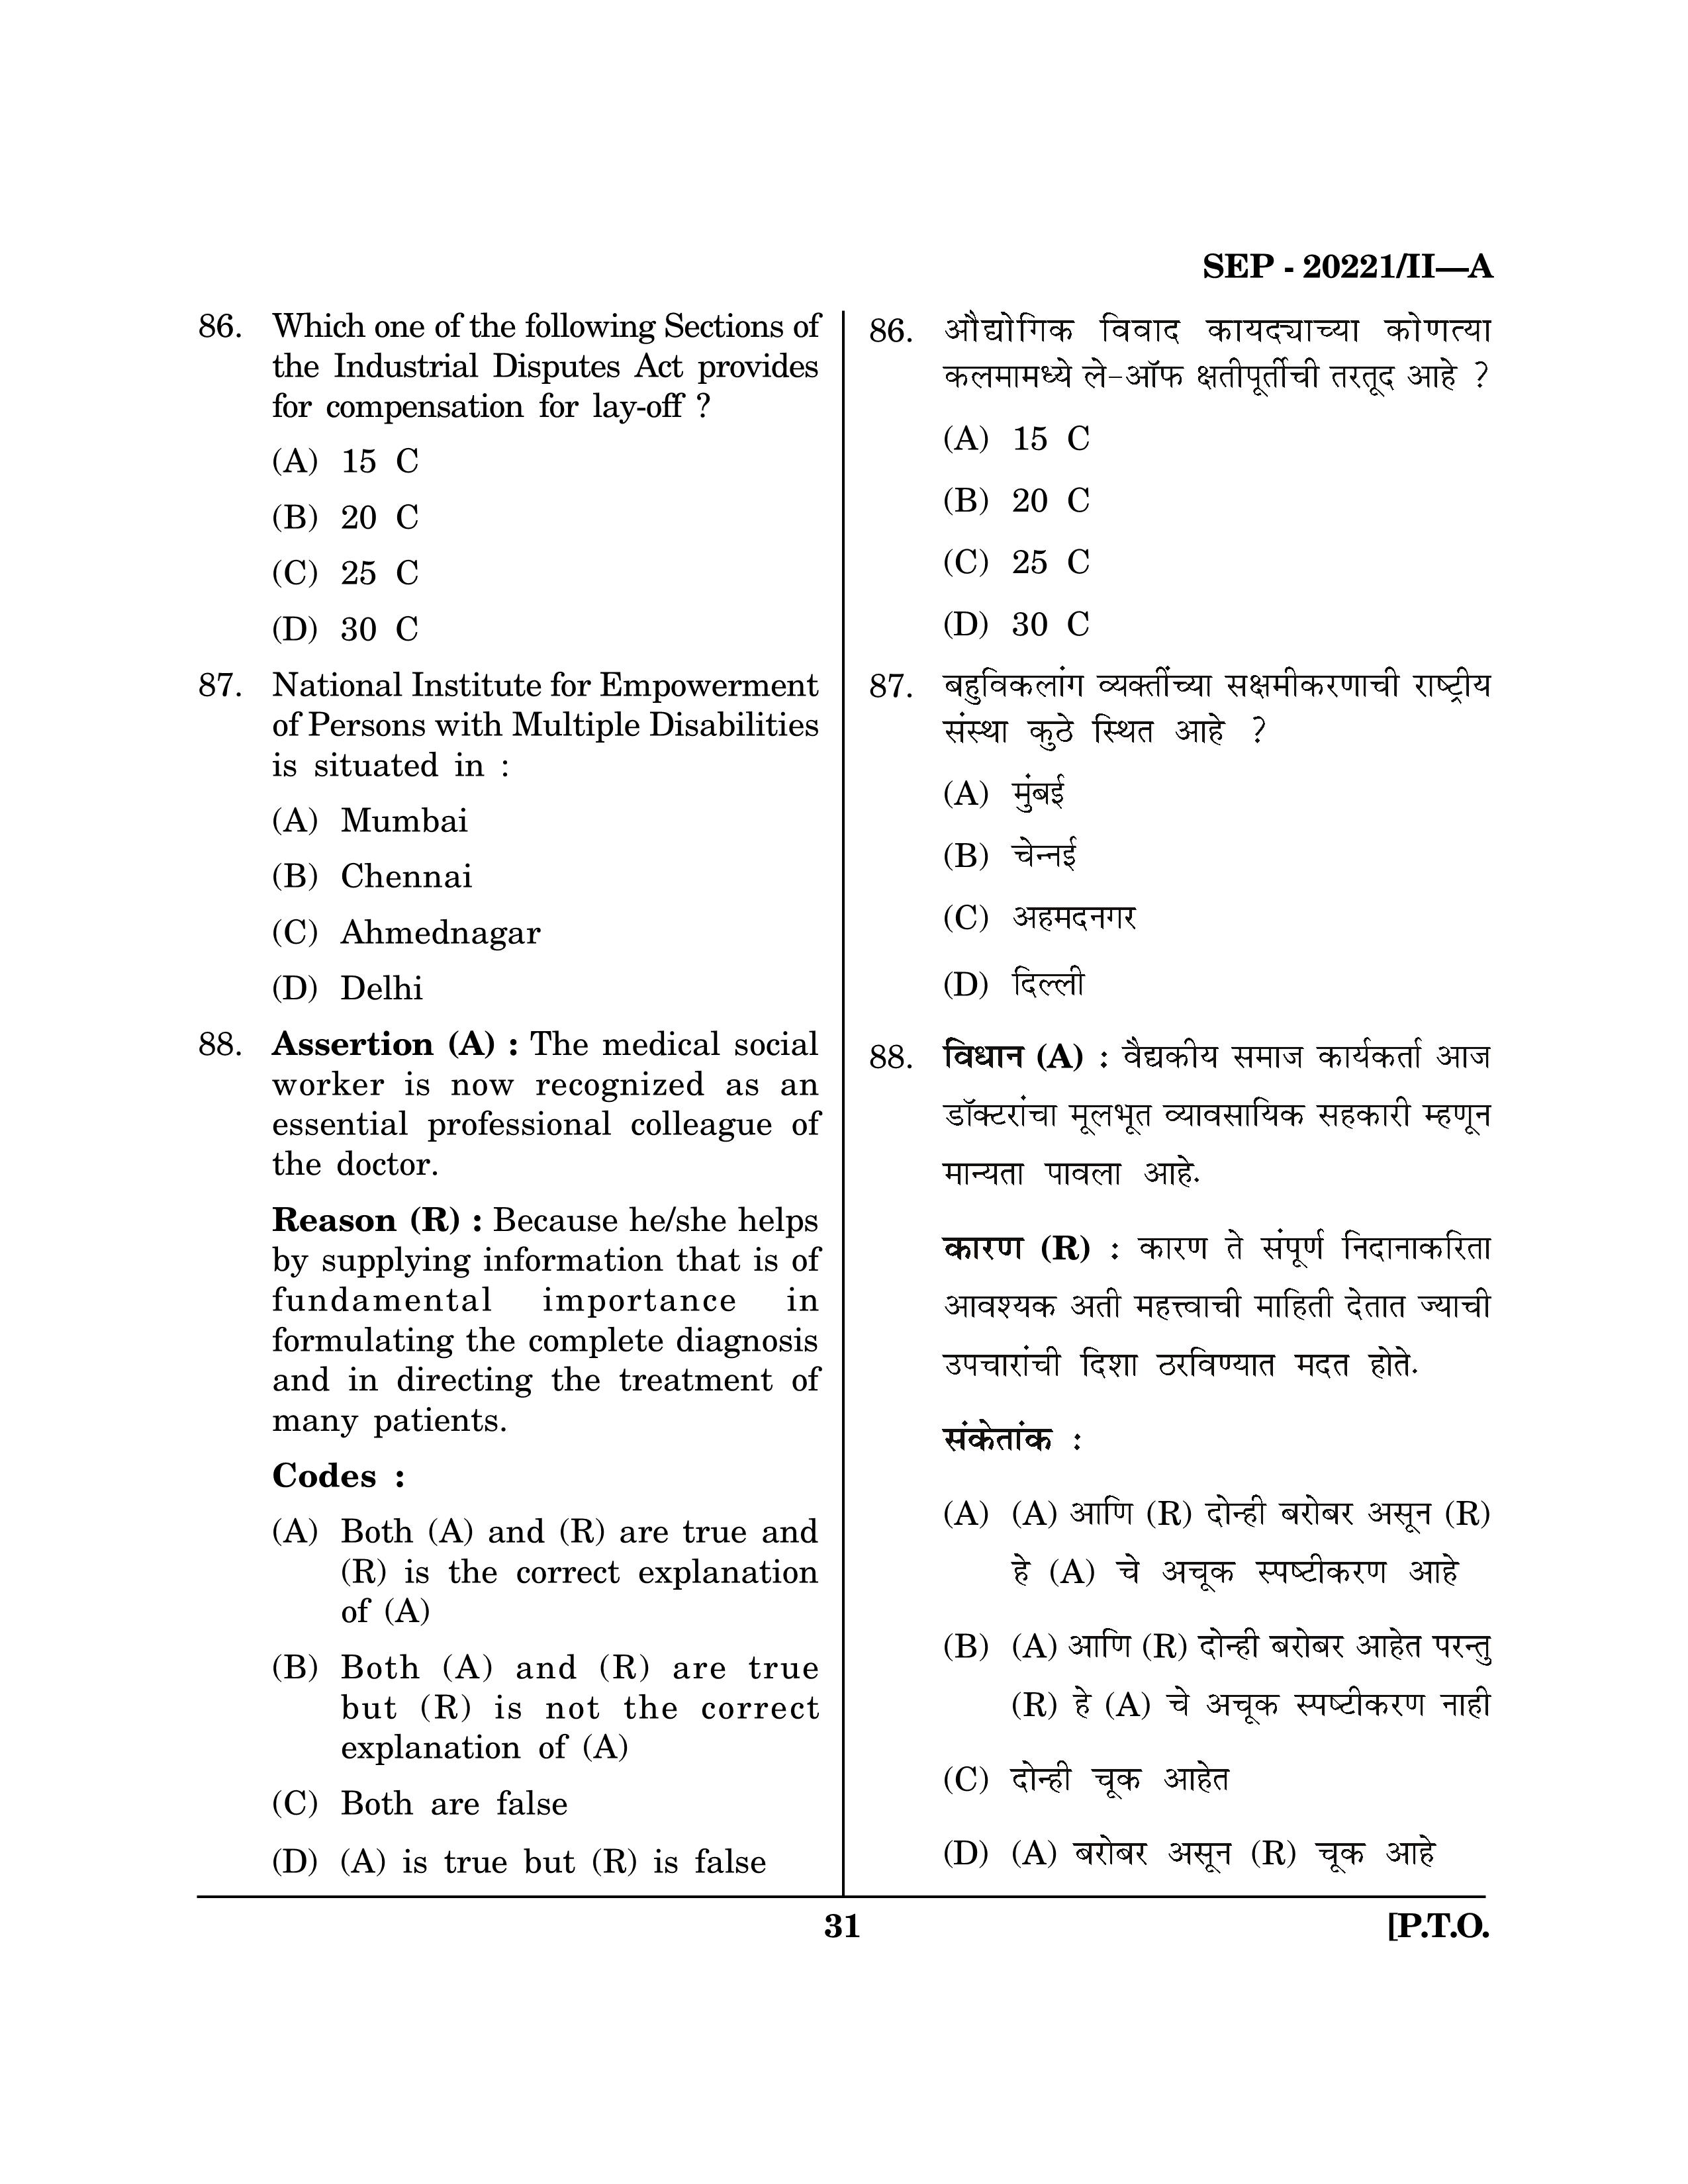 Maharashtra SET Social Work Exam Question Paper September 2021 30